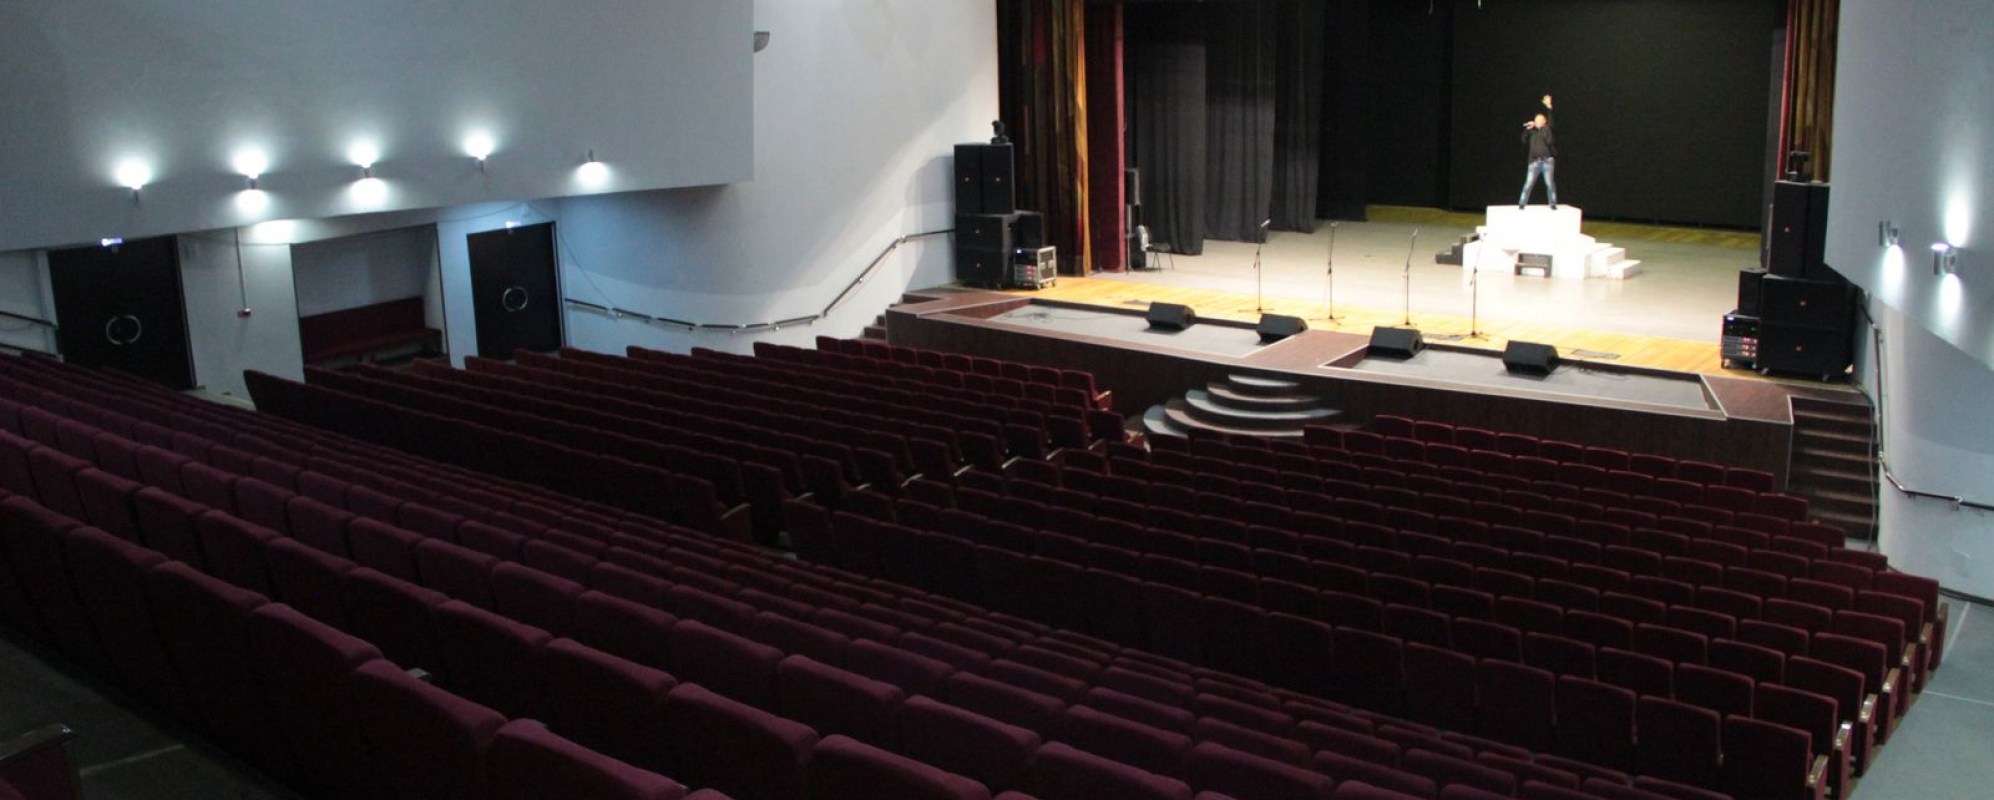 Фотографии концертного зала Большой зал Ухтинского городского дворца культуры